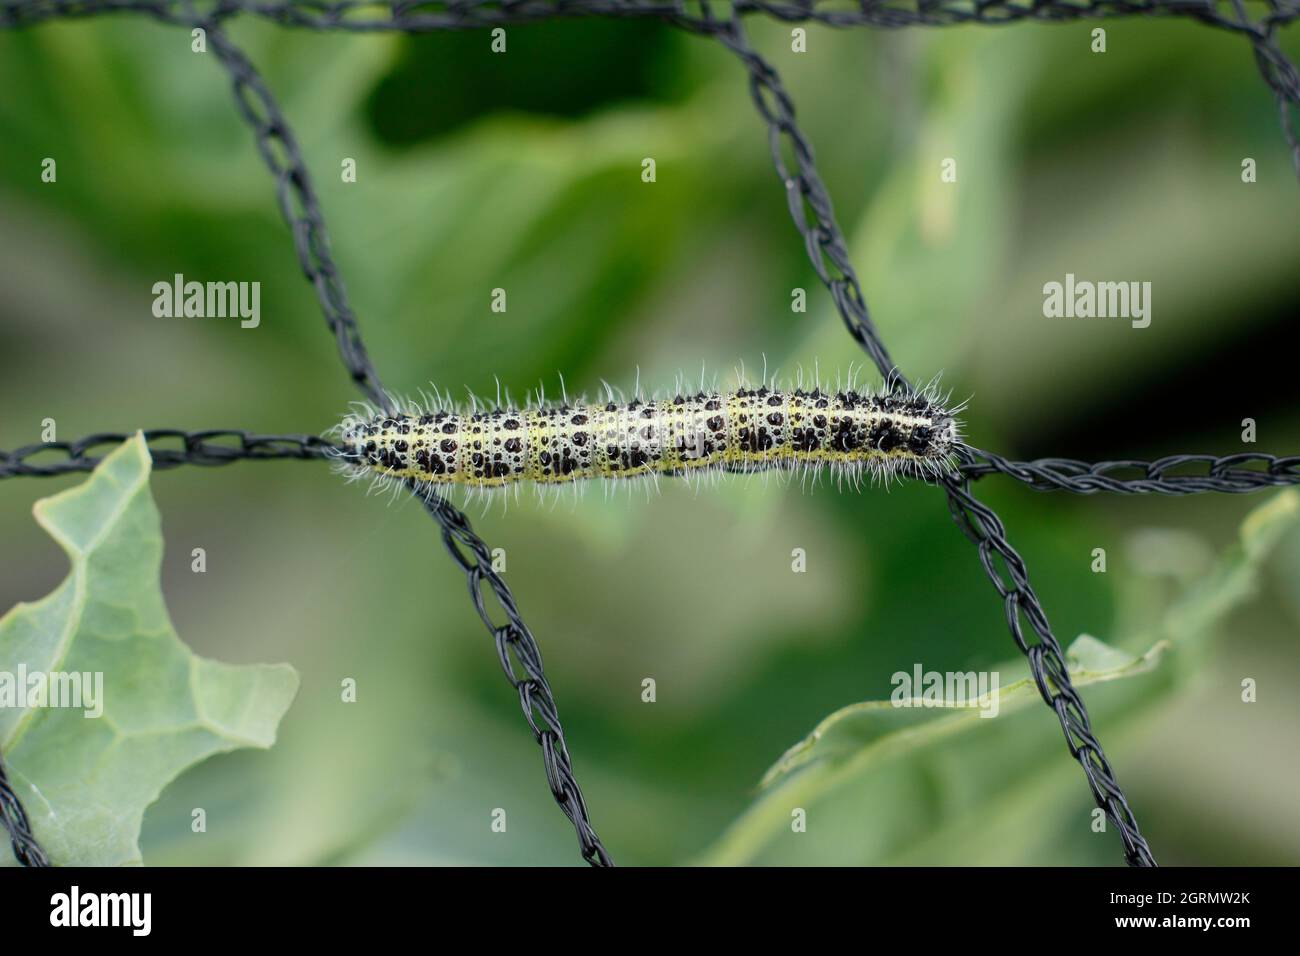 Pieris brassicae larva. Large larve de papillon blanc vorace sur filet inapproprié qui a causé des dommages aux plantes de chou. ROYAUME-UNI Banque D'Images